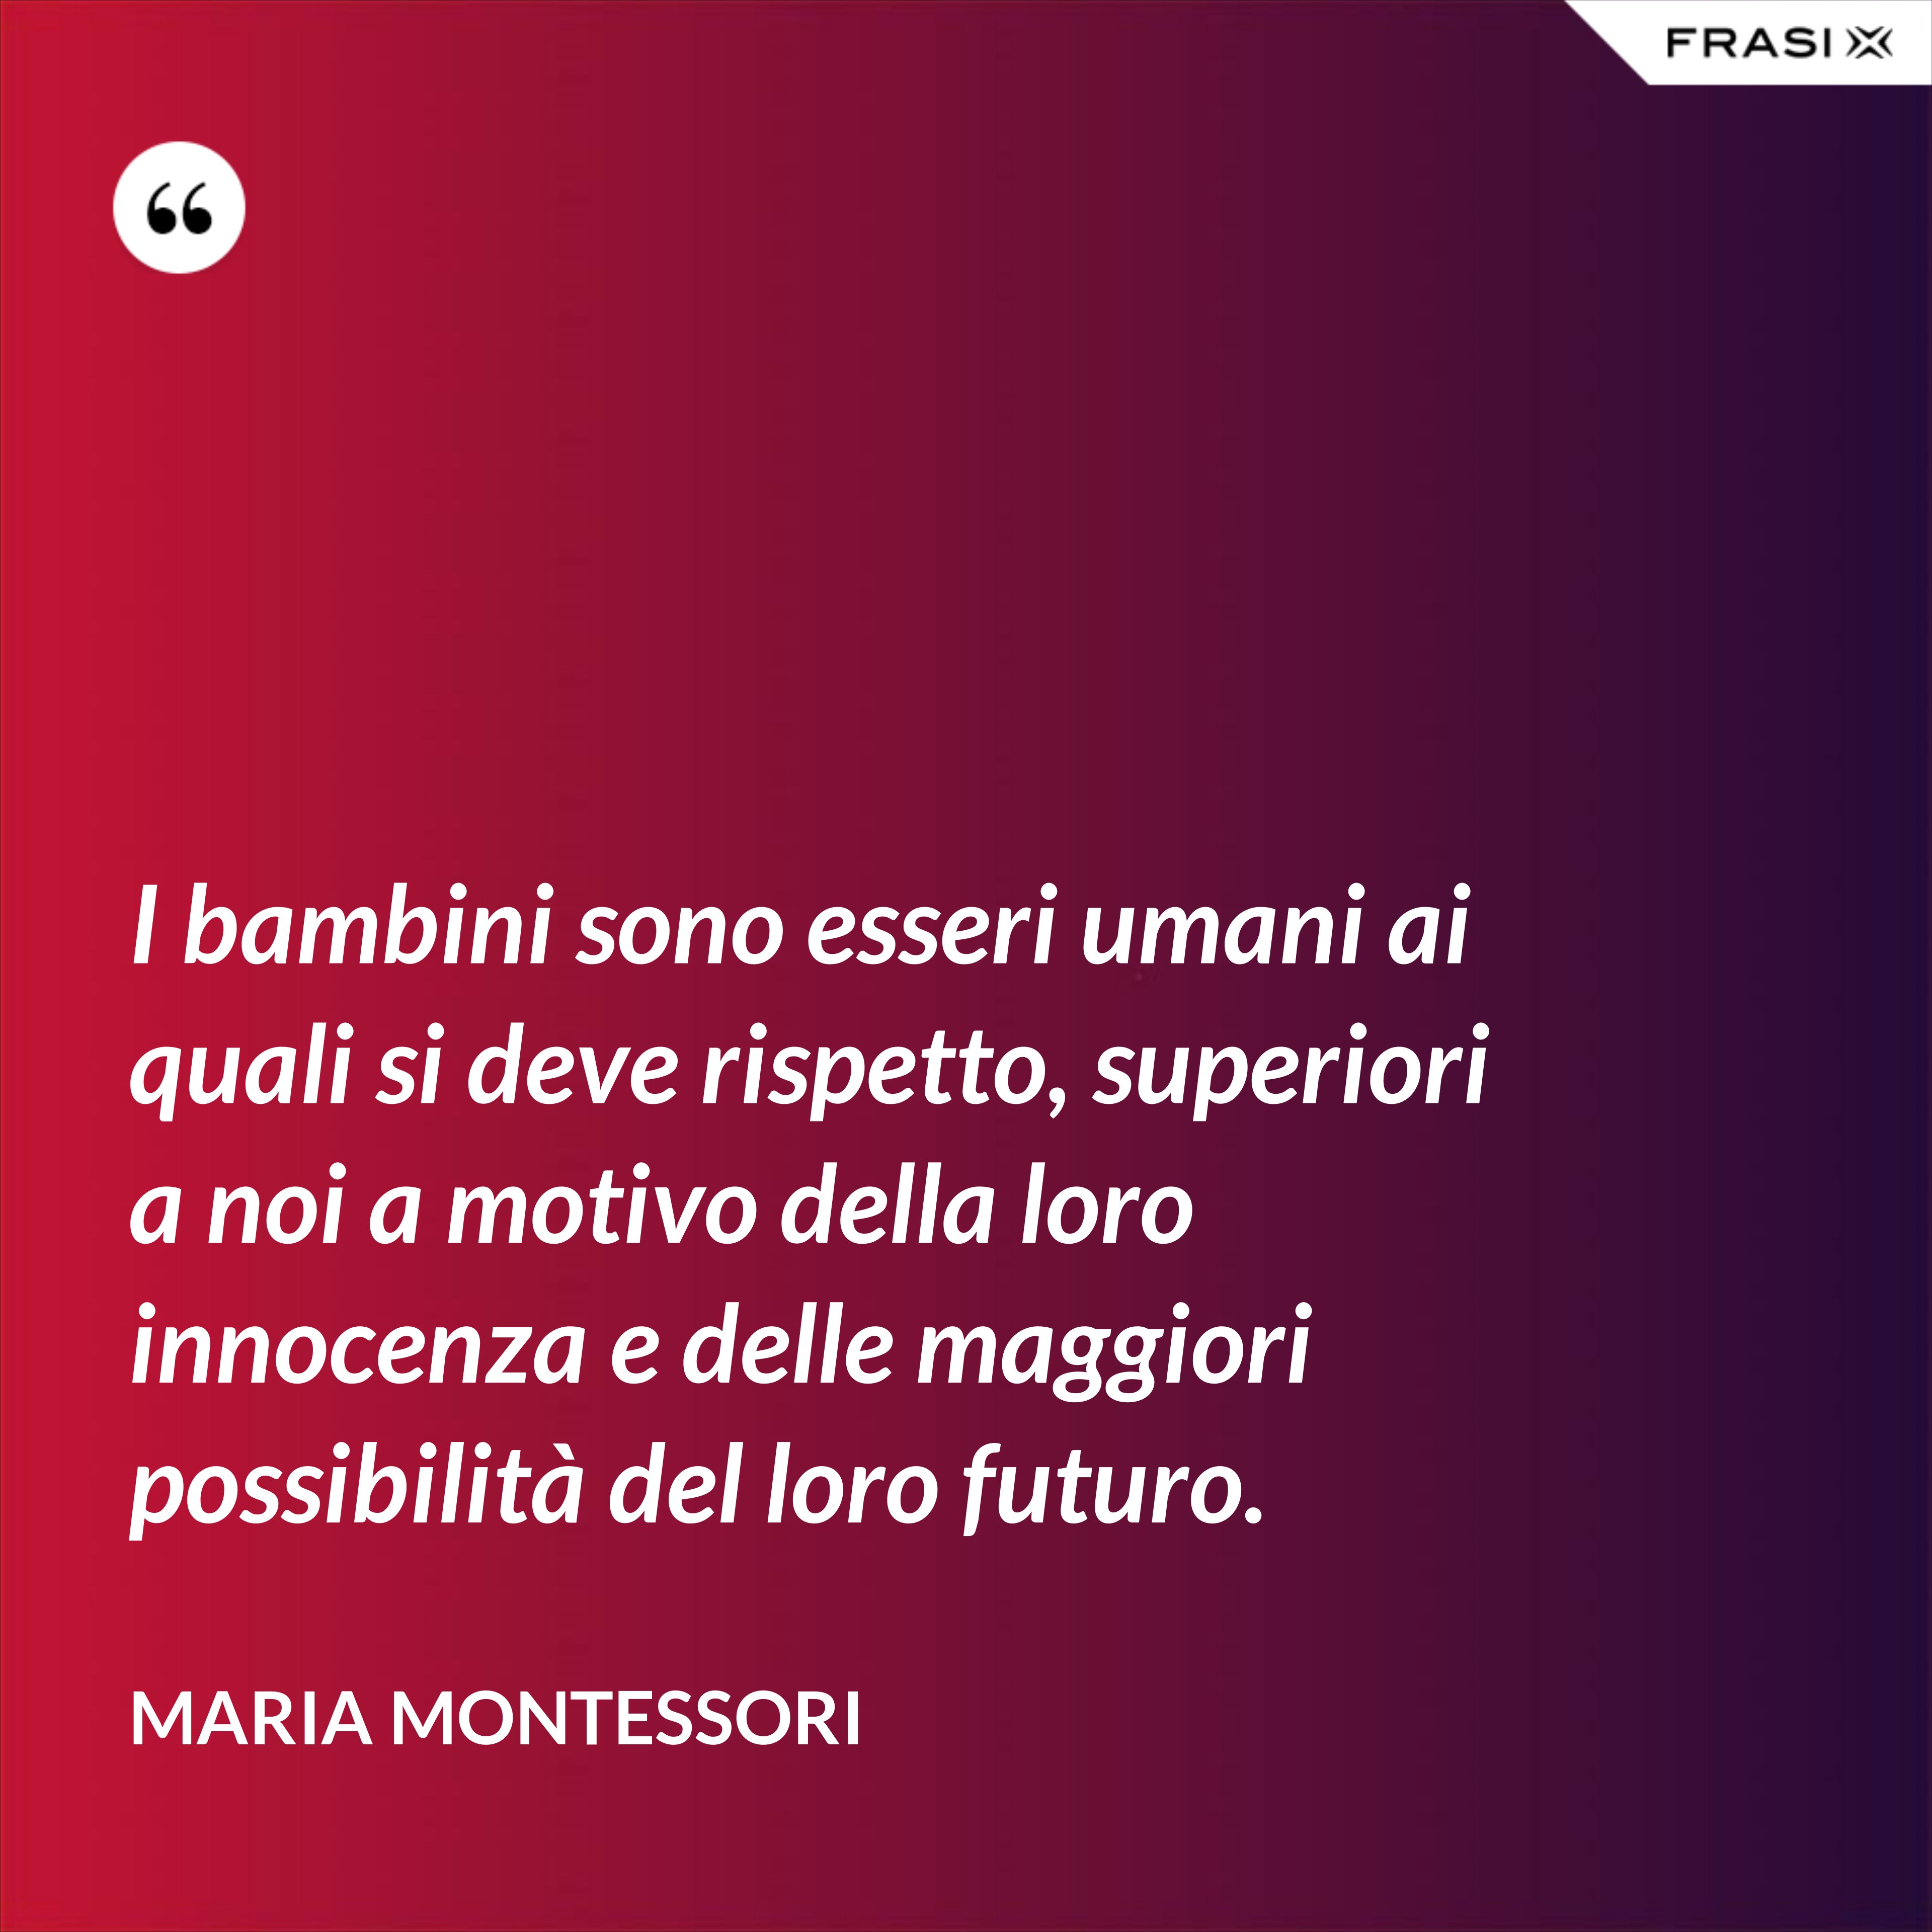 I bambini sono esseri umani ai quali si deve rispetto, superiori a noi a motivo della loro innocenza e delle maggiori possibilità del loro futuro. - Maria Montessori